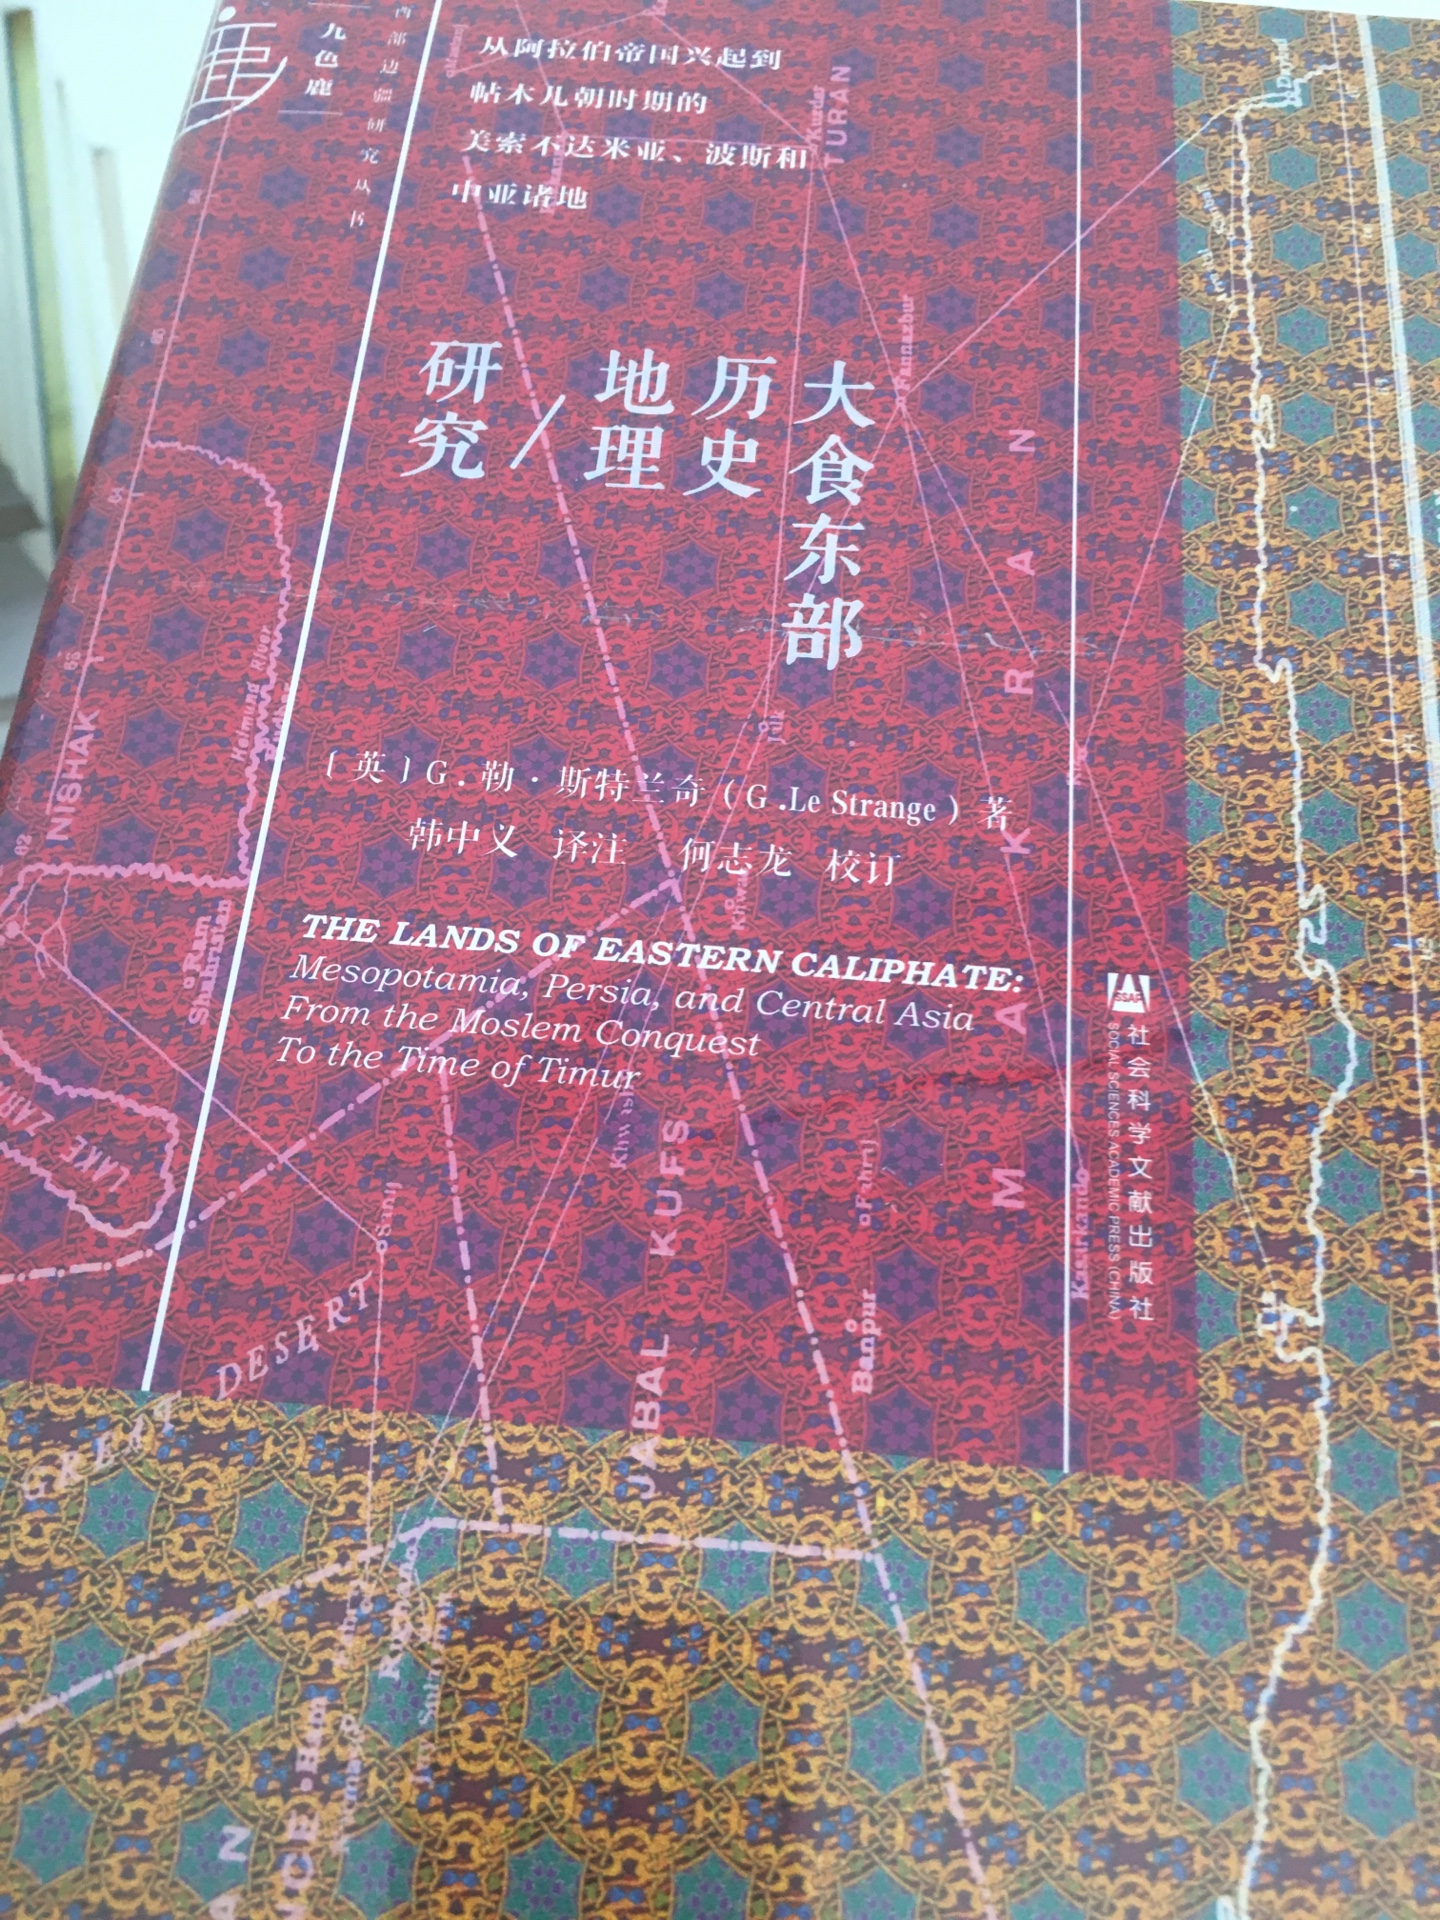 甲骨文系列丛书中的一本，大食东部历史地理研究，买来了解下